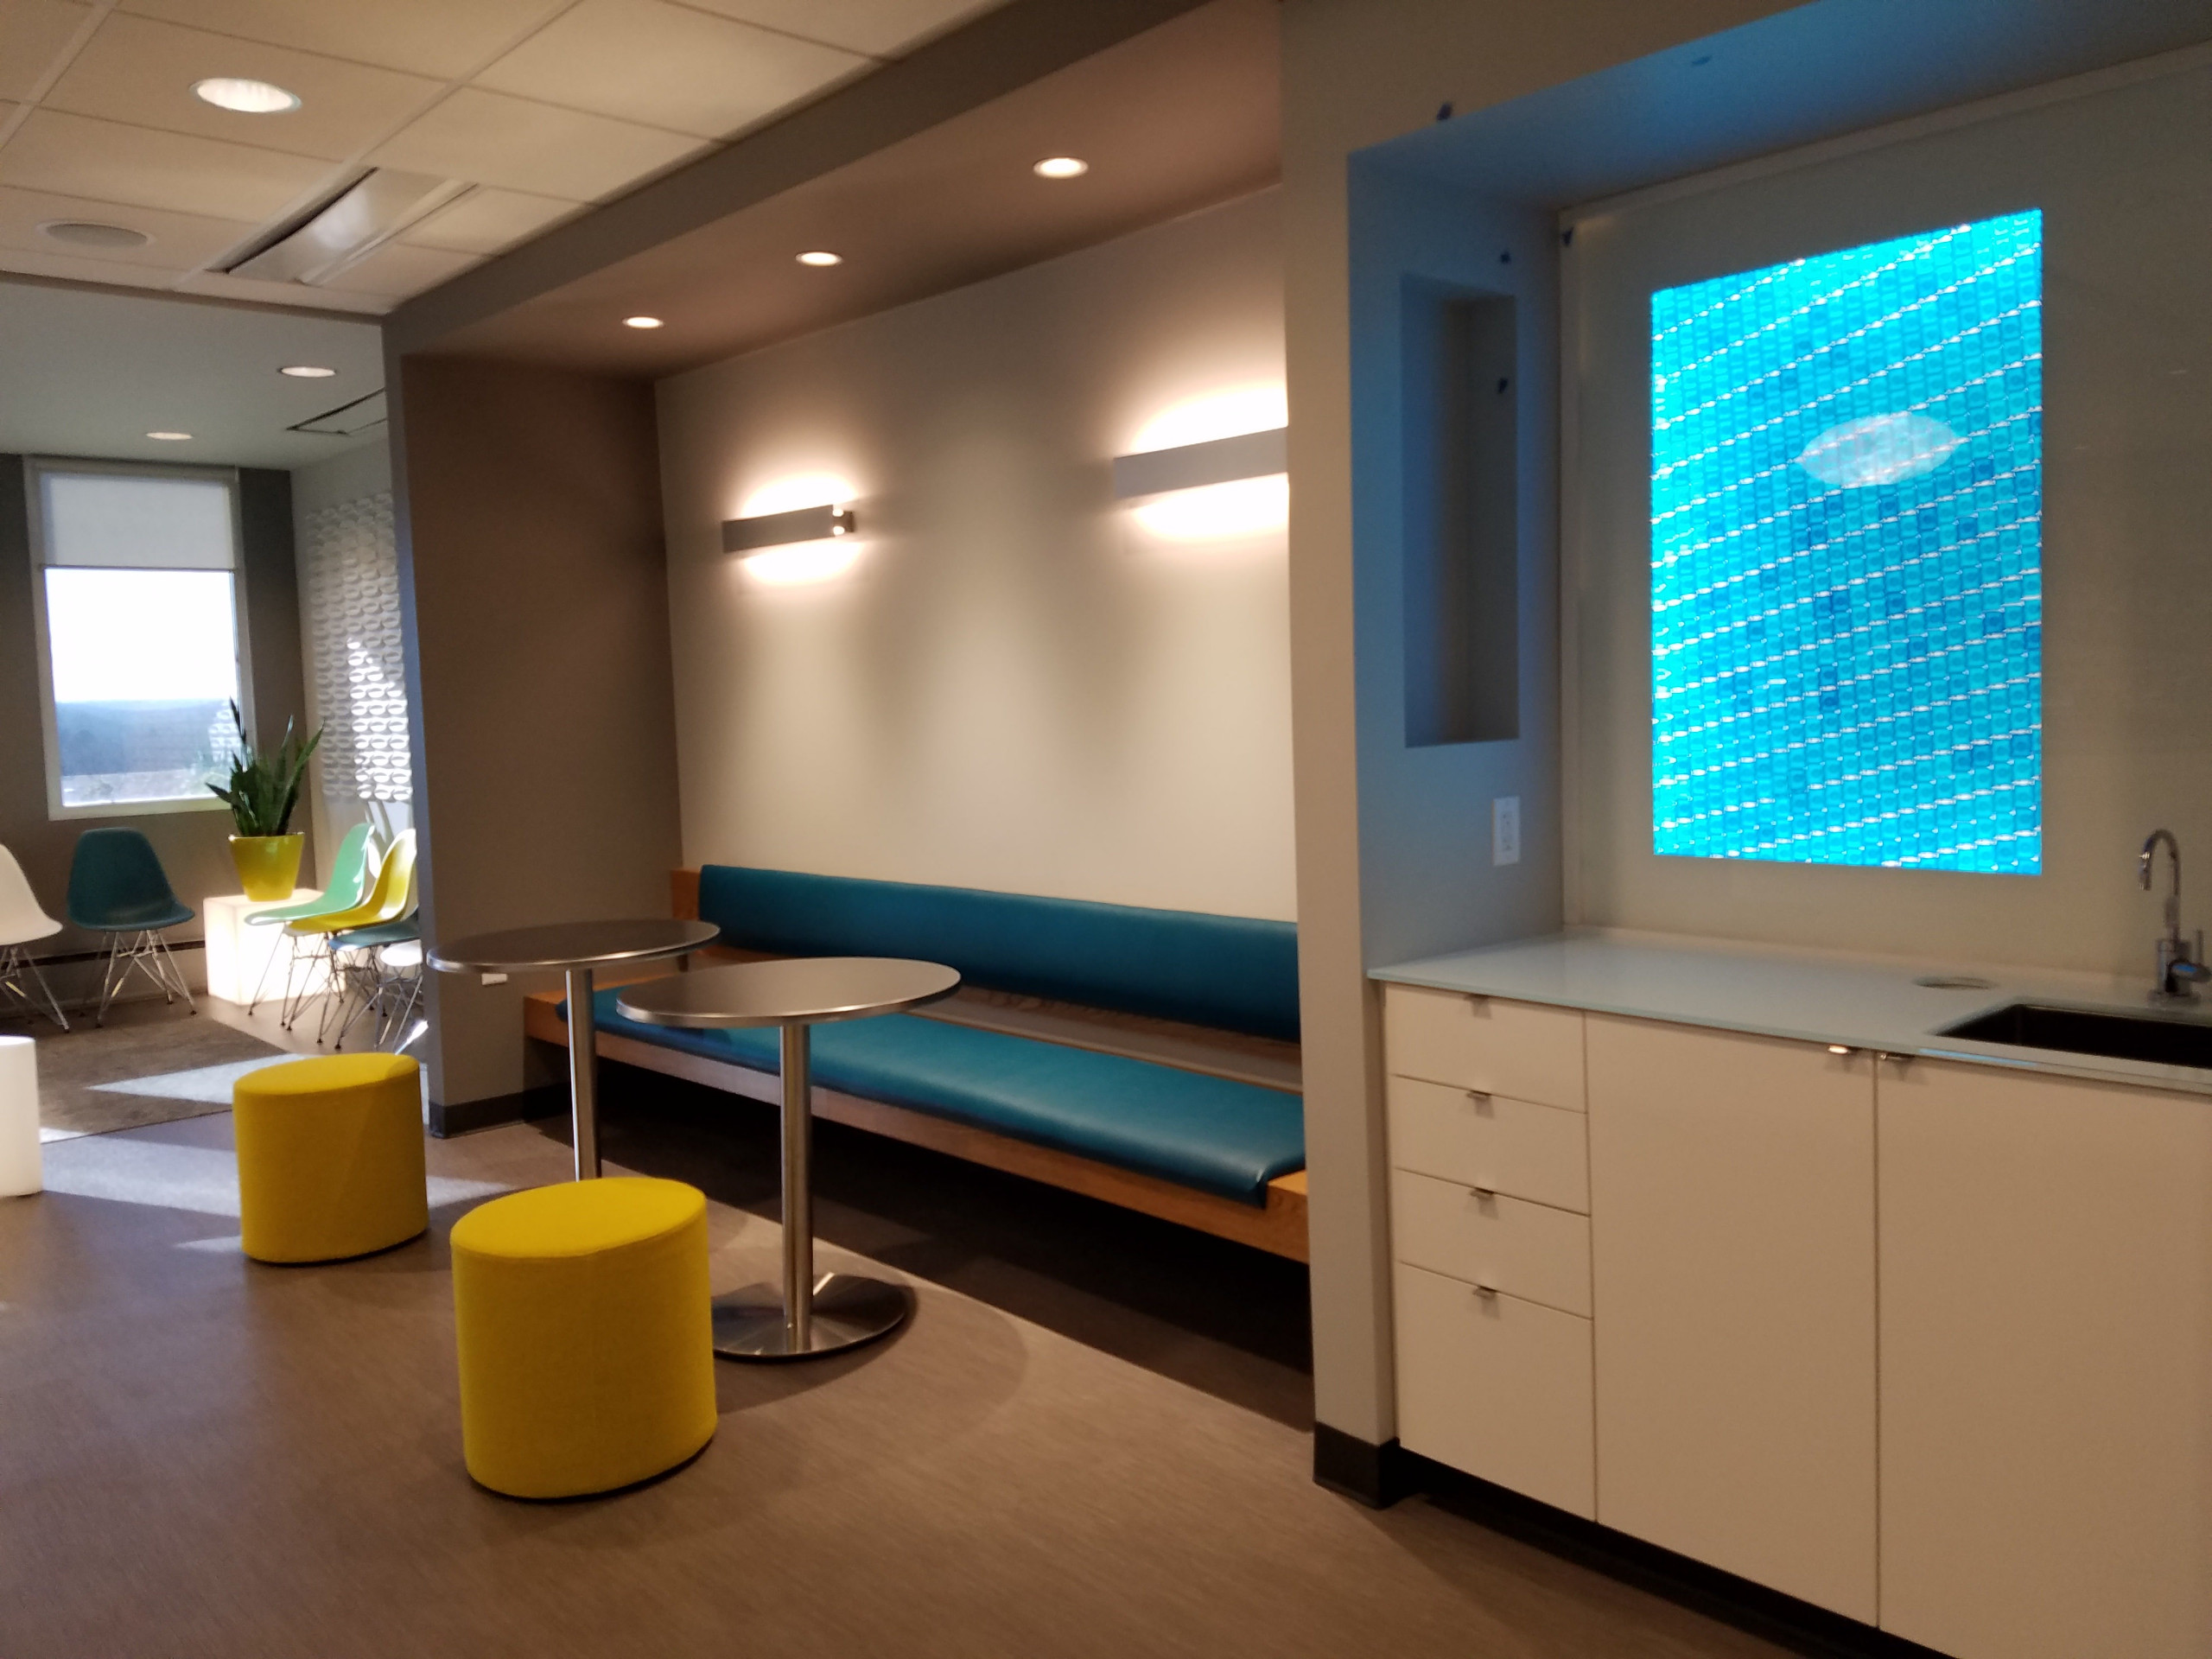 Dental Office Reception Area Ideas - Photos & Ideas | Houzz